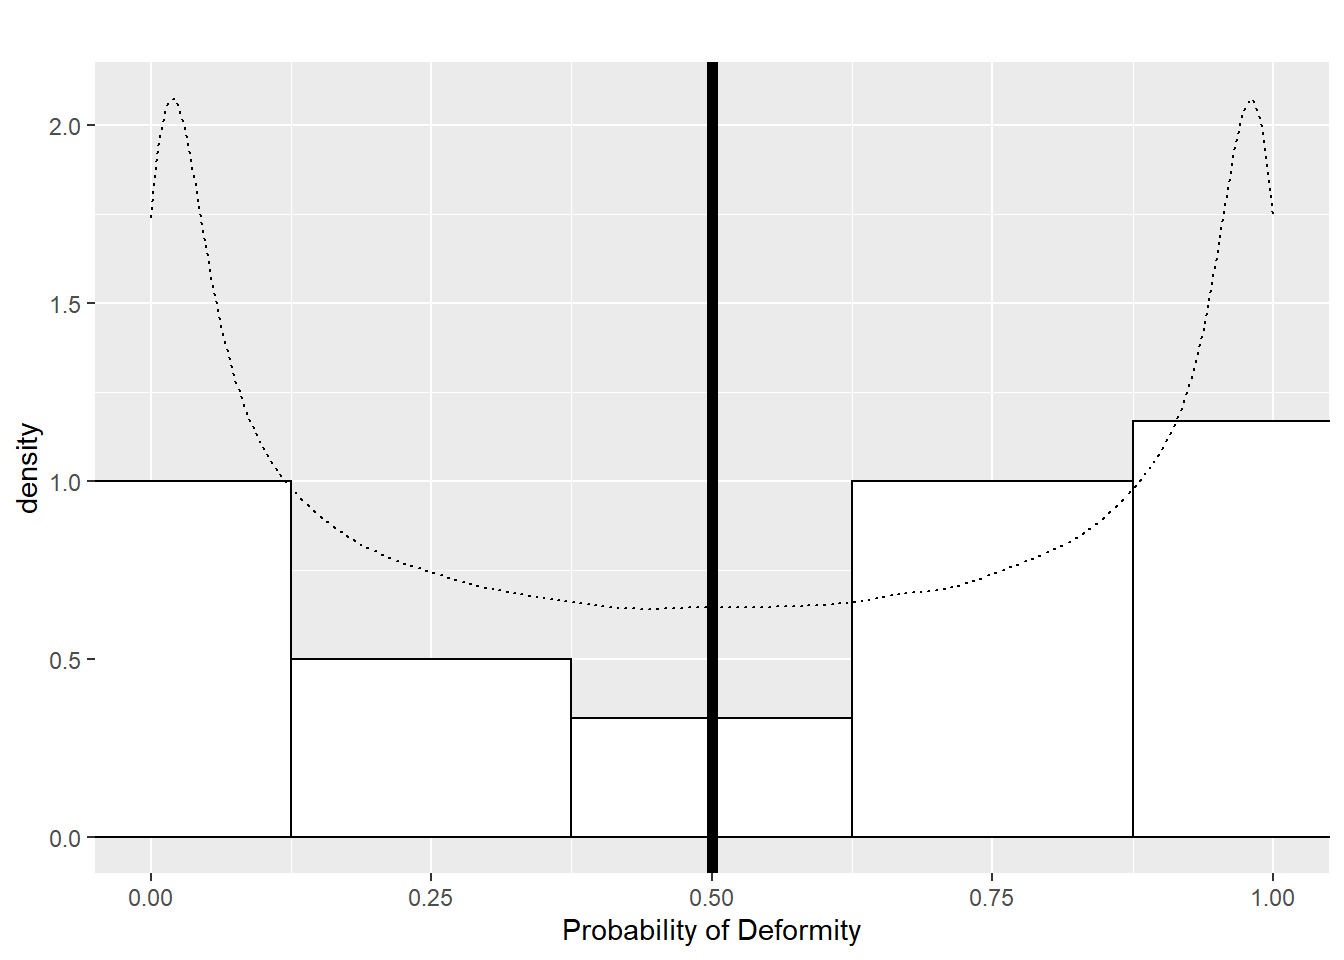 Dam probabilities in Scenario 1.